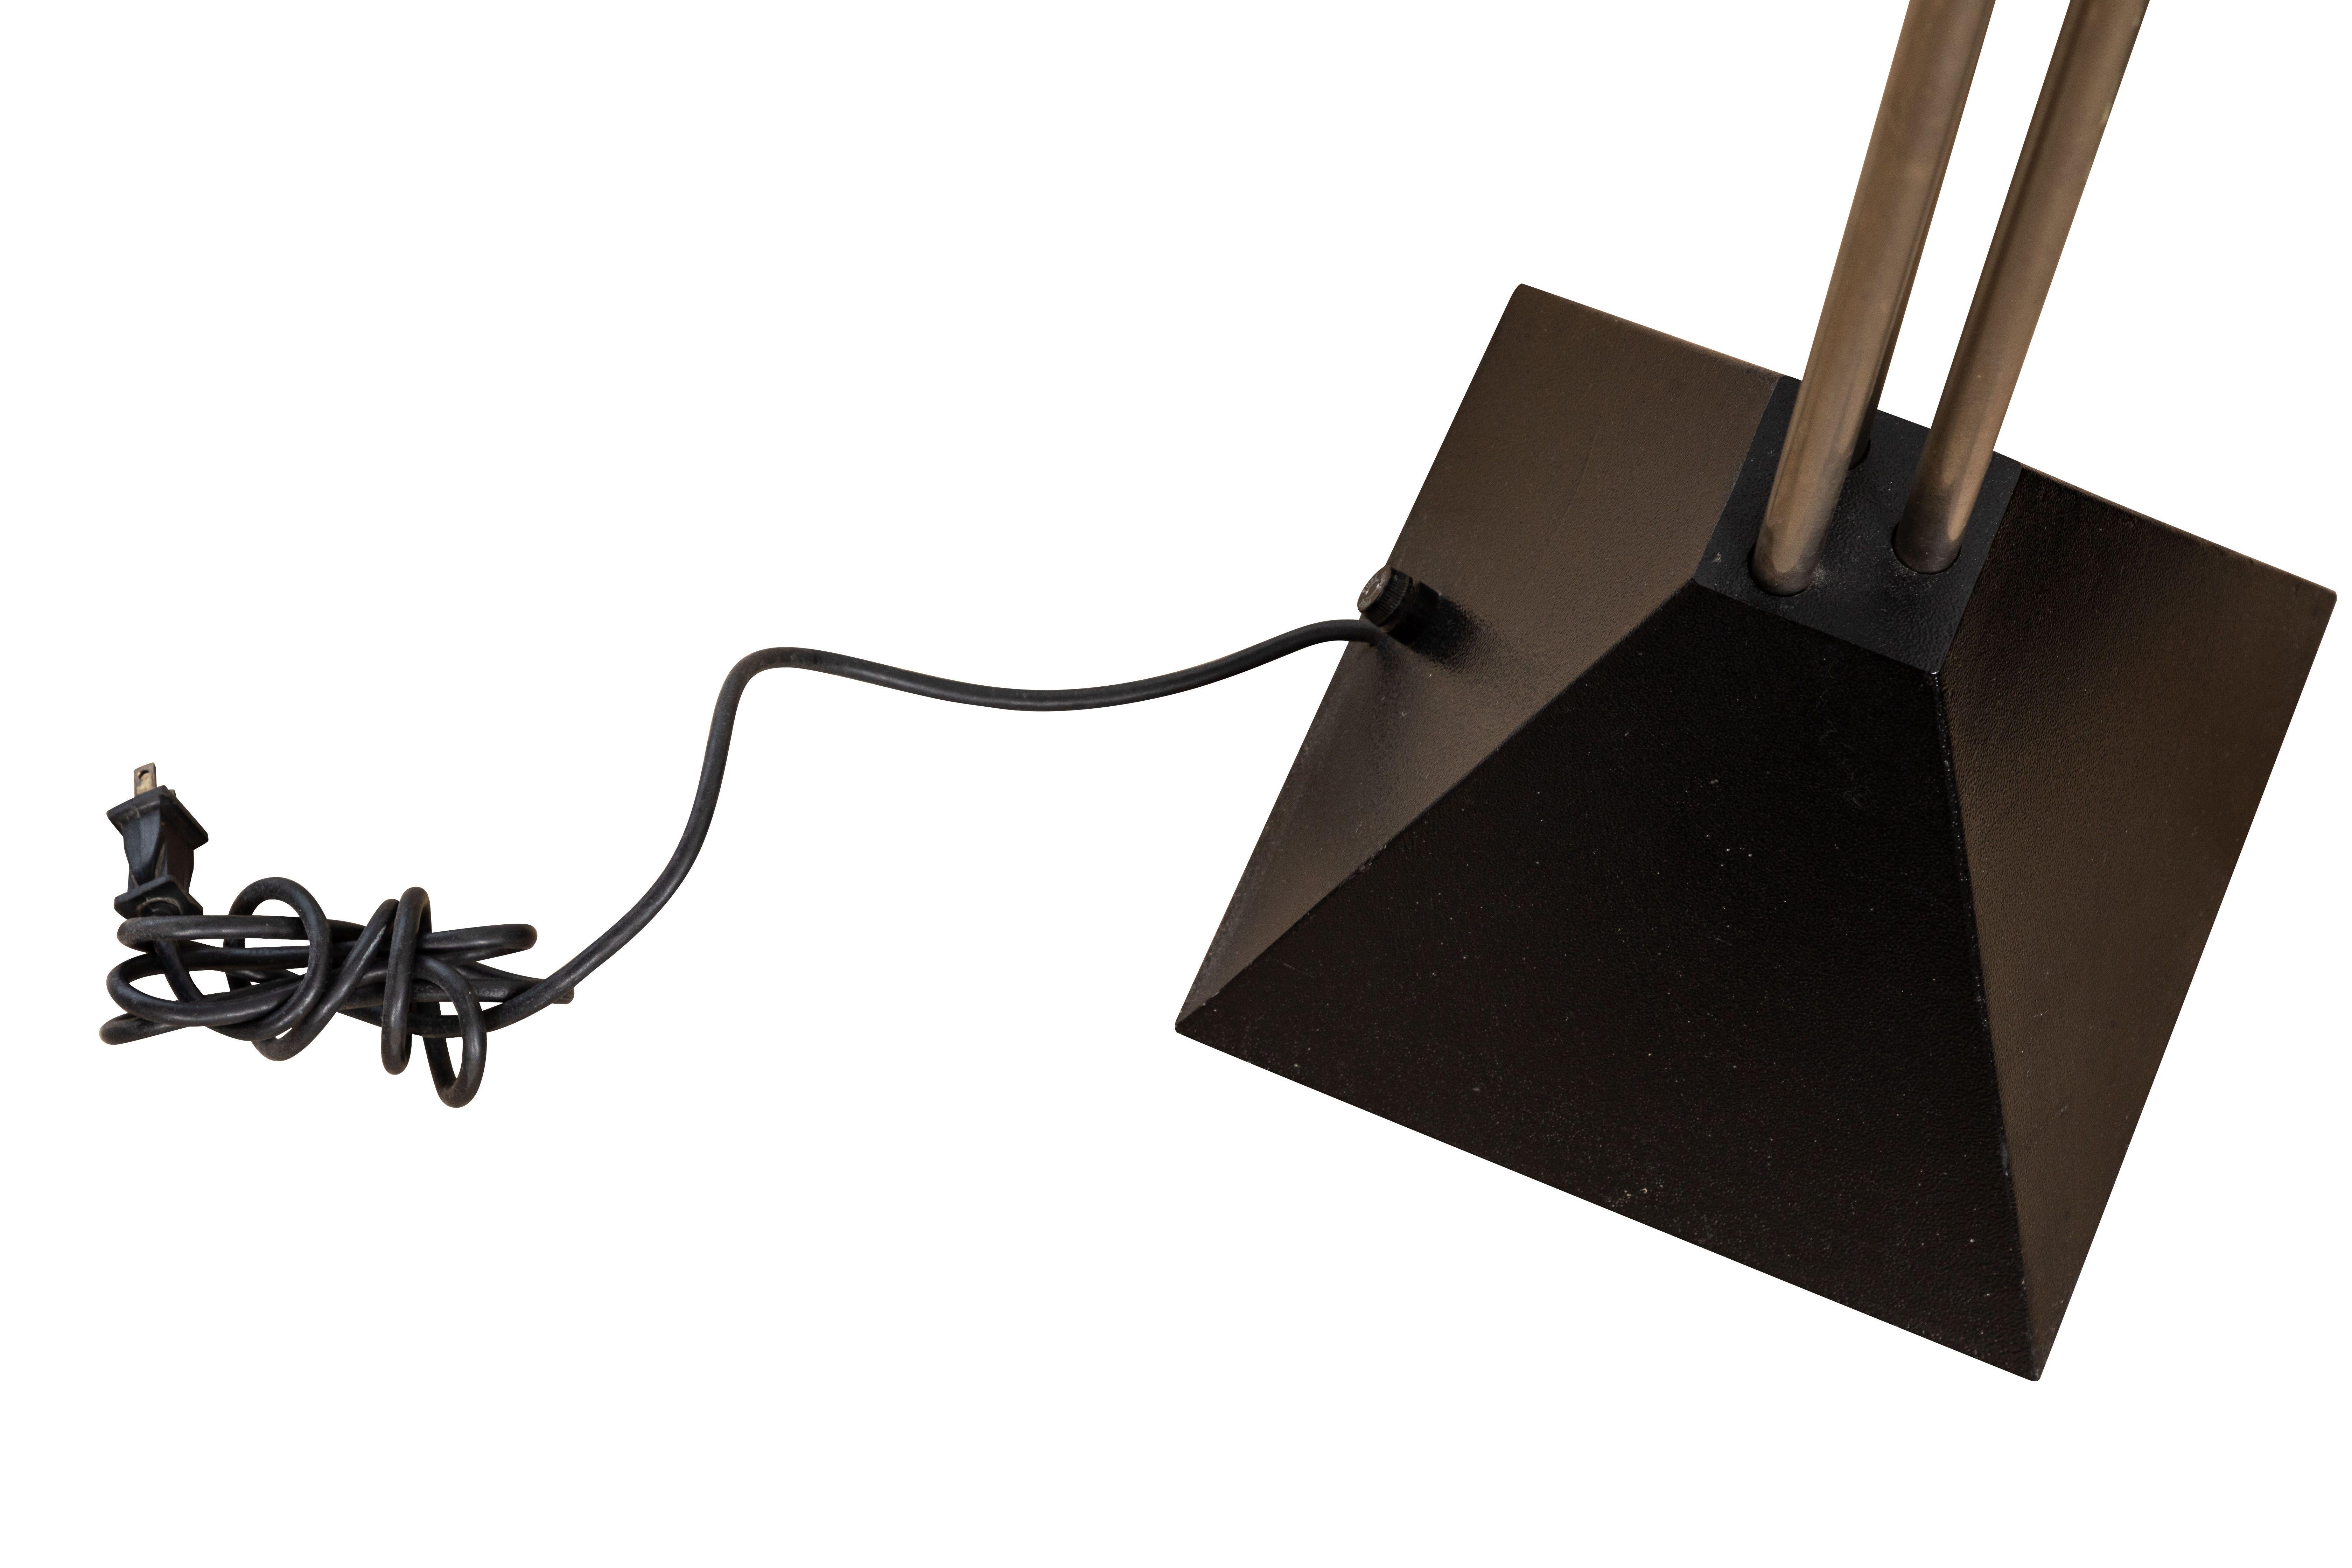 Paire de lampadaires 'Memphis' par Ron Rezek, vintage, 1980
Lampadaire torchère en métal, 3 tiges en métal sur base pyramidale noire à 4 côtés, abat-jour torchère bol noir. Fonctionne au toucher, fonctionne à merveille.